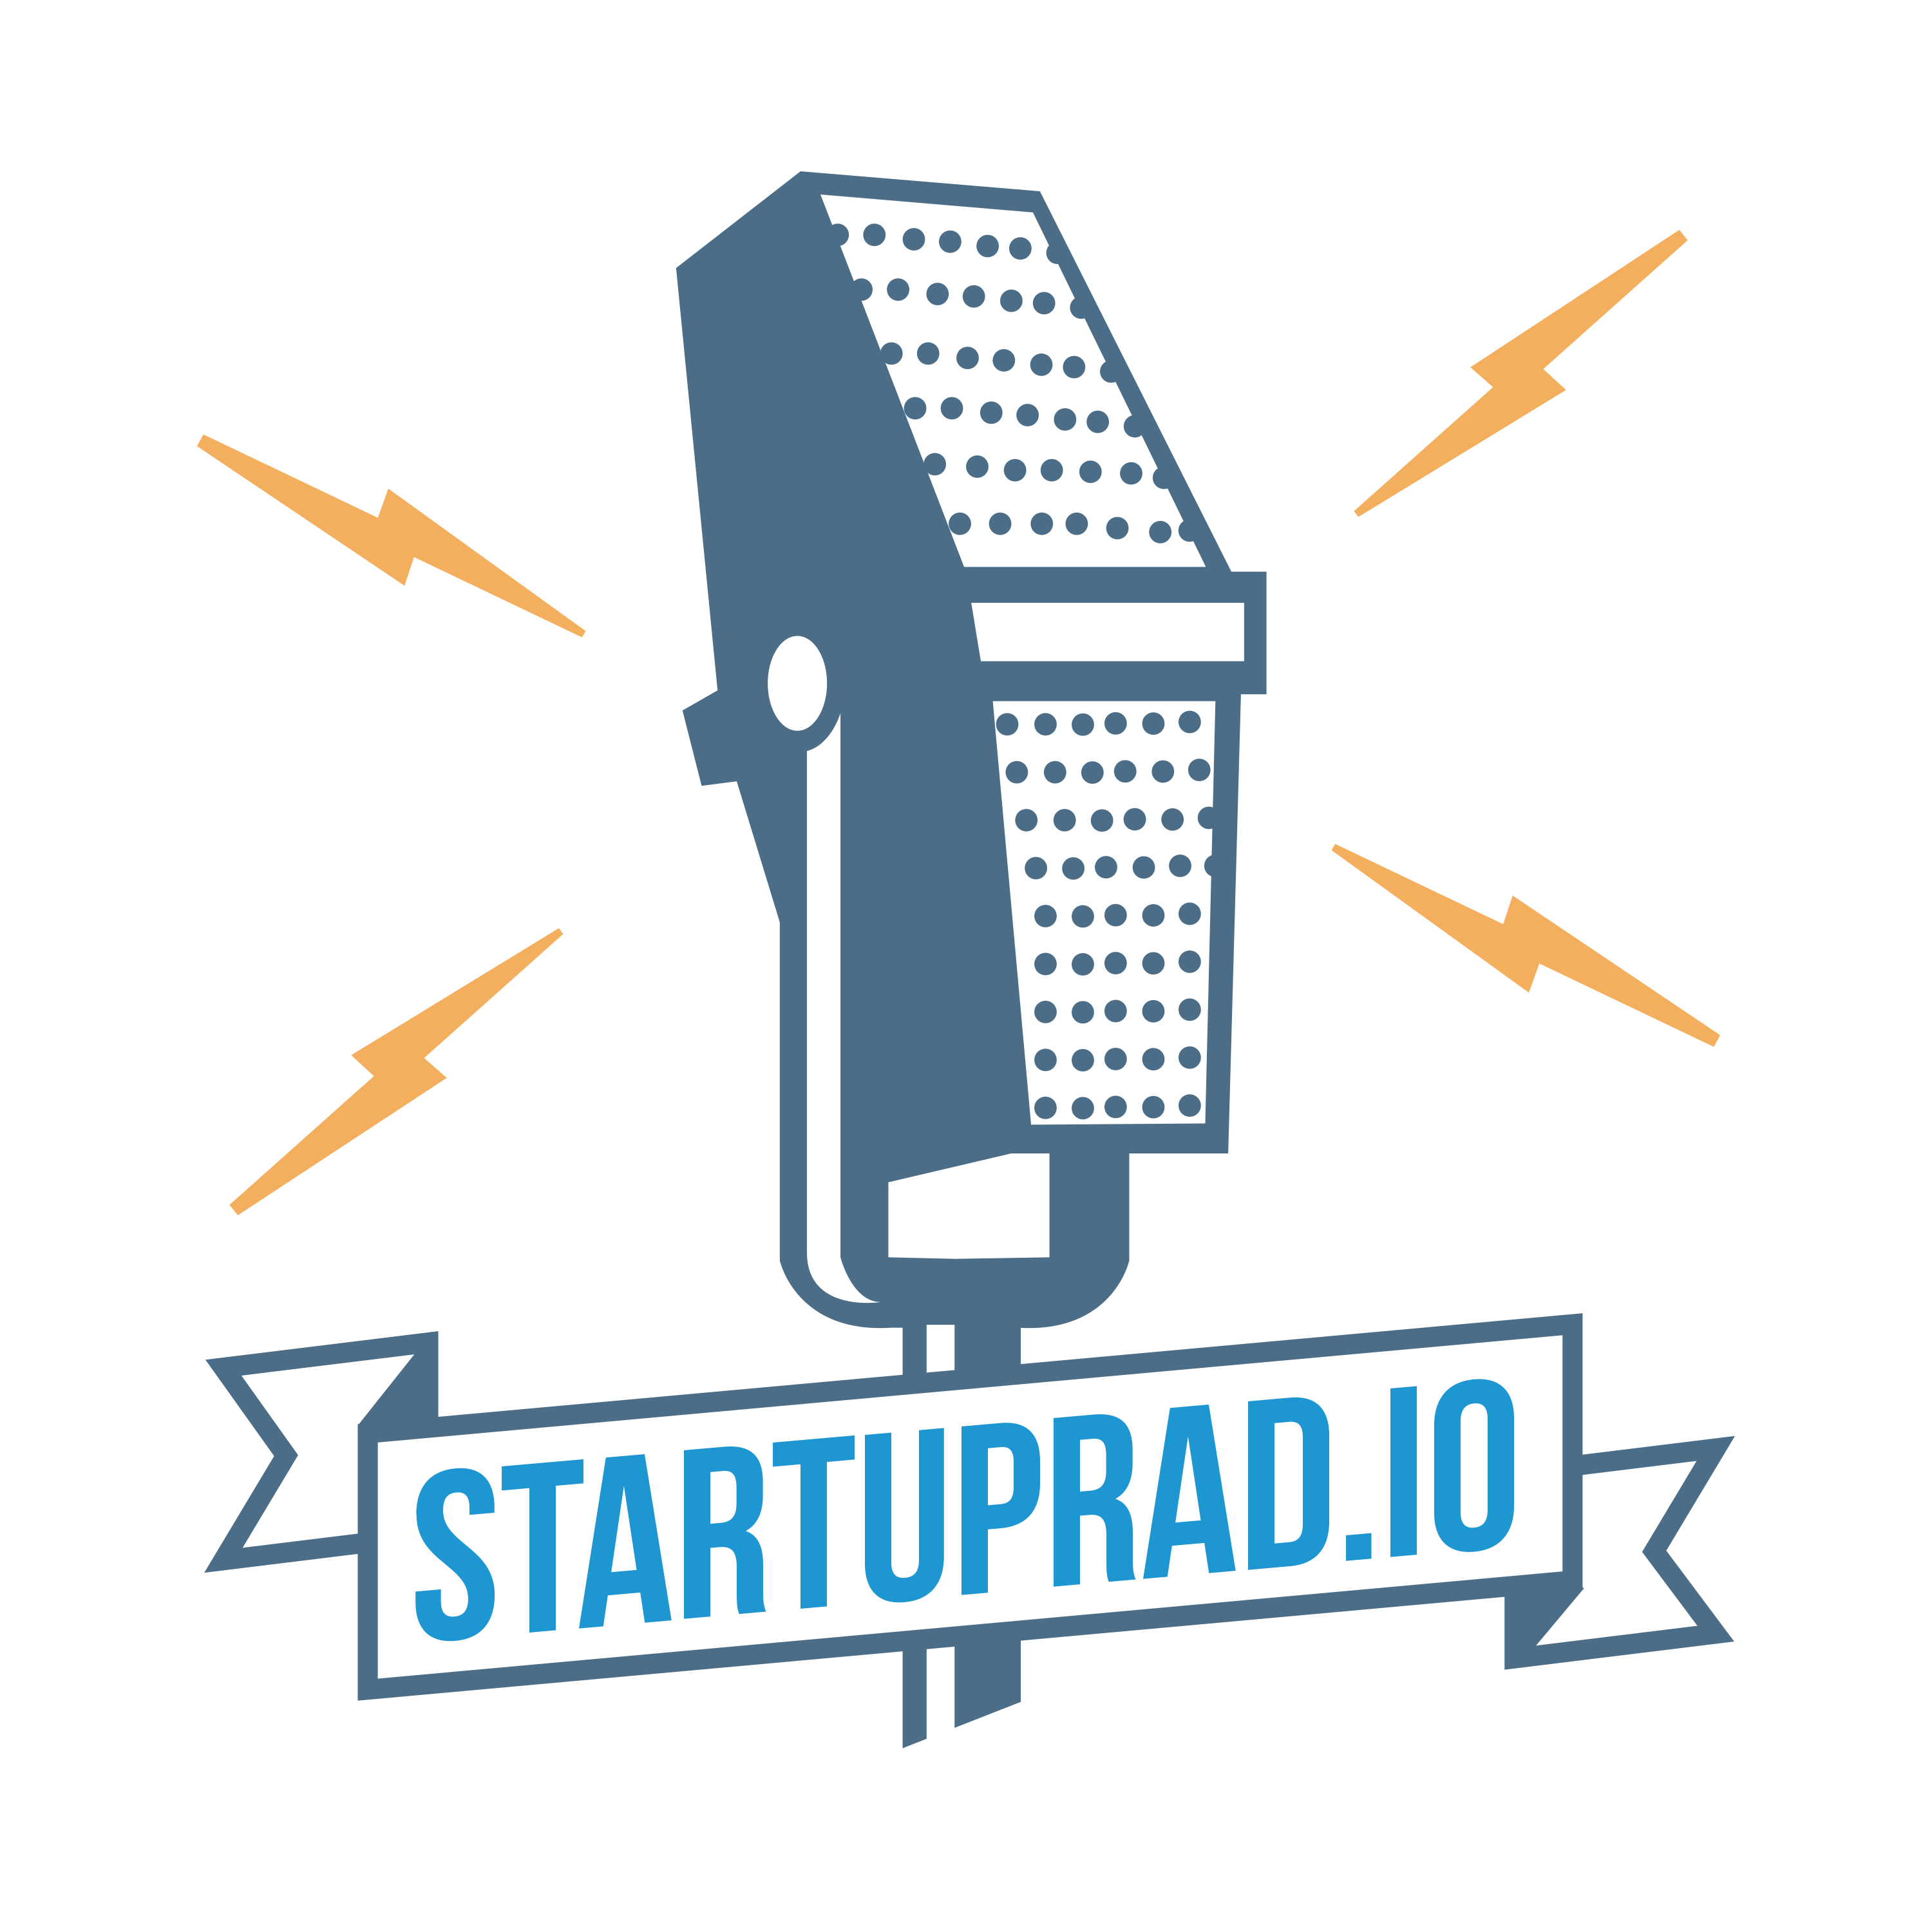 Startuprad.io - The Authority on German Startups